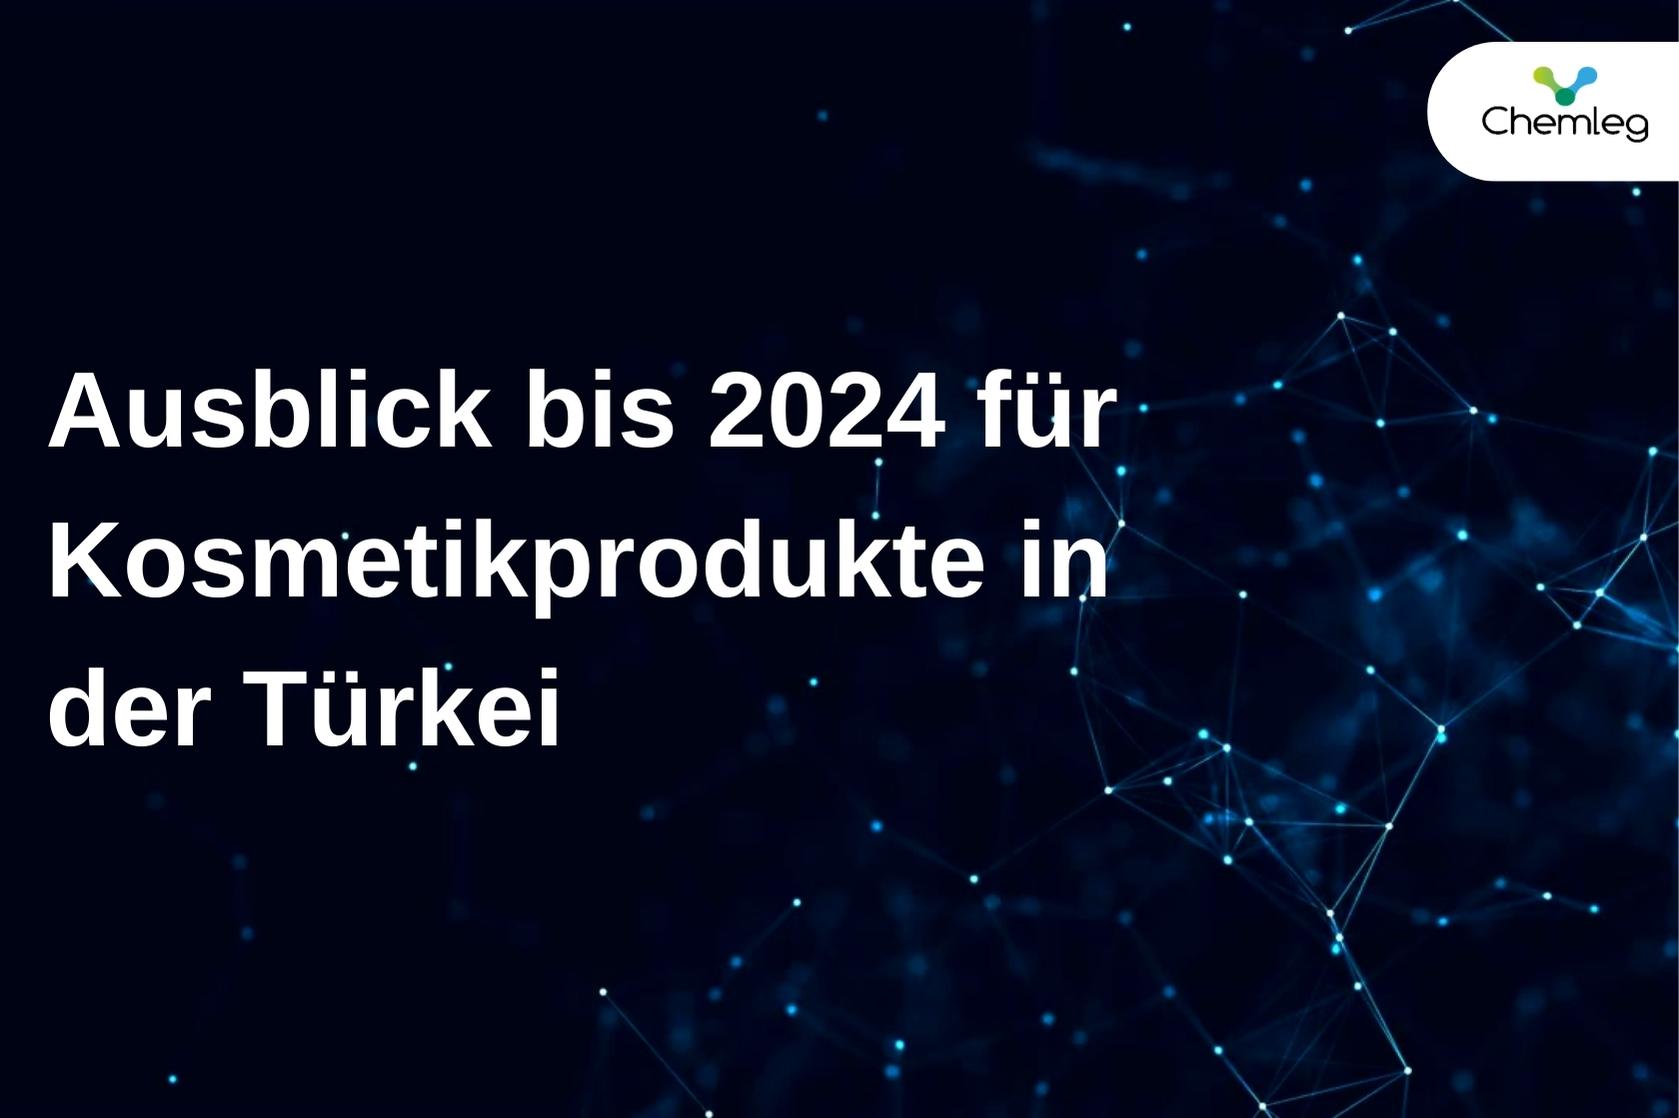 Ausblick bis 2024 für Kosmetikprodukte in der Türkei